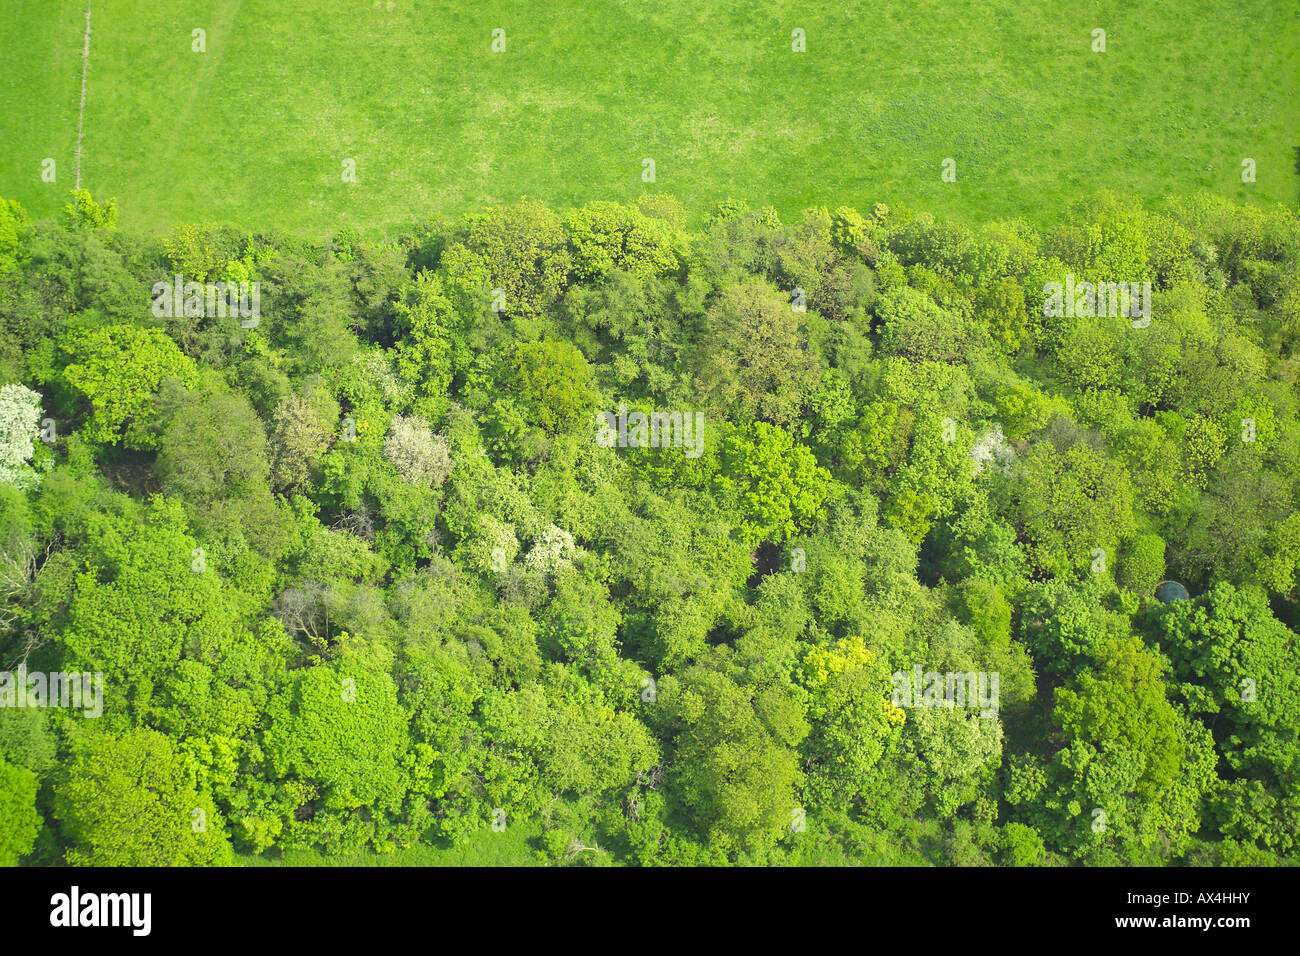 Vista aérea del bosque formado por árboles de hoja caduca en el borde de un campo Foto de stock